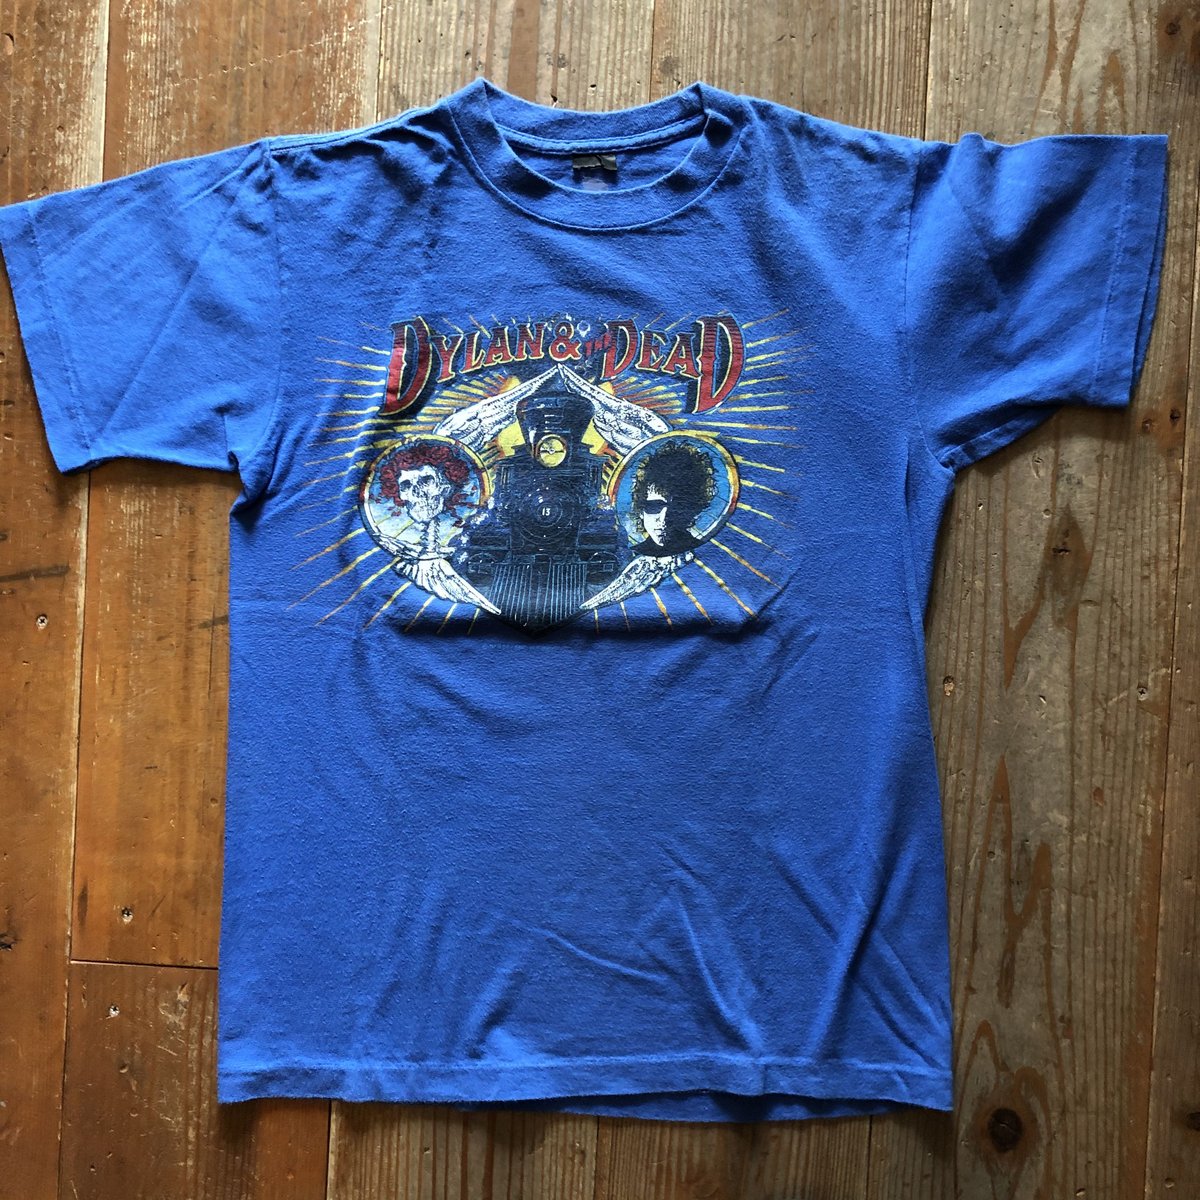 1987’s ボブディラン グレイトフルデッド 対バンTシャツ